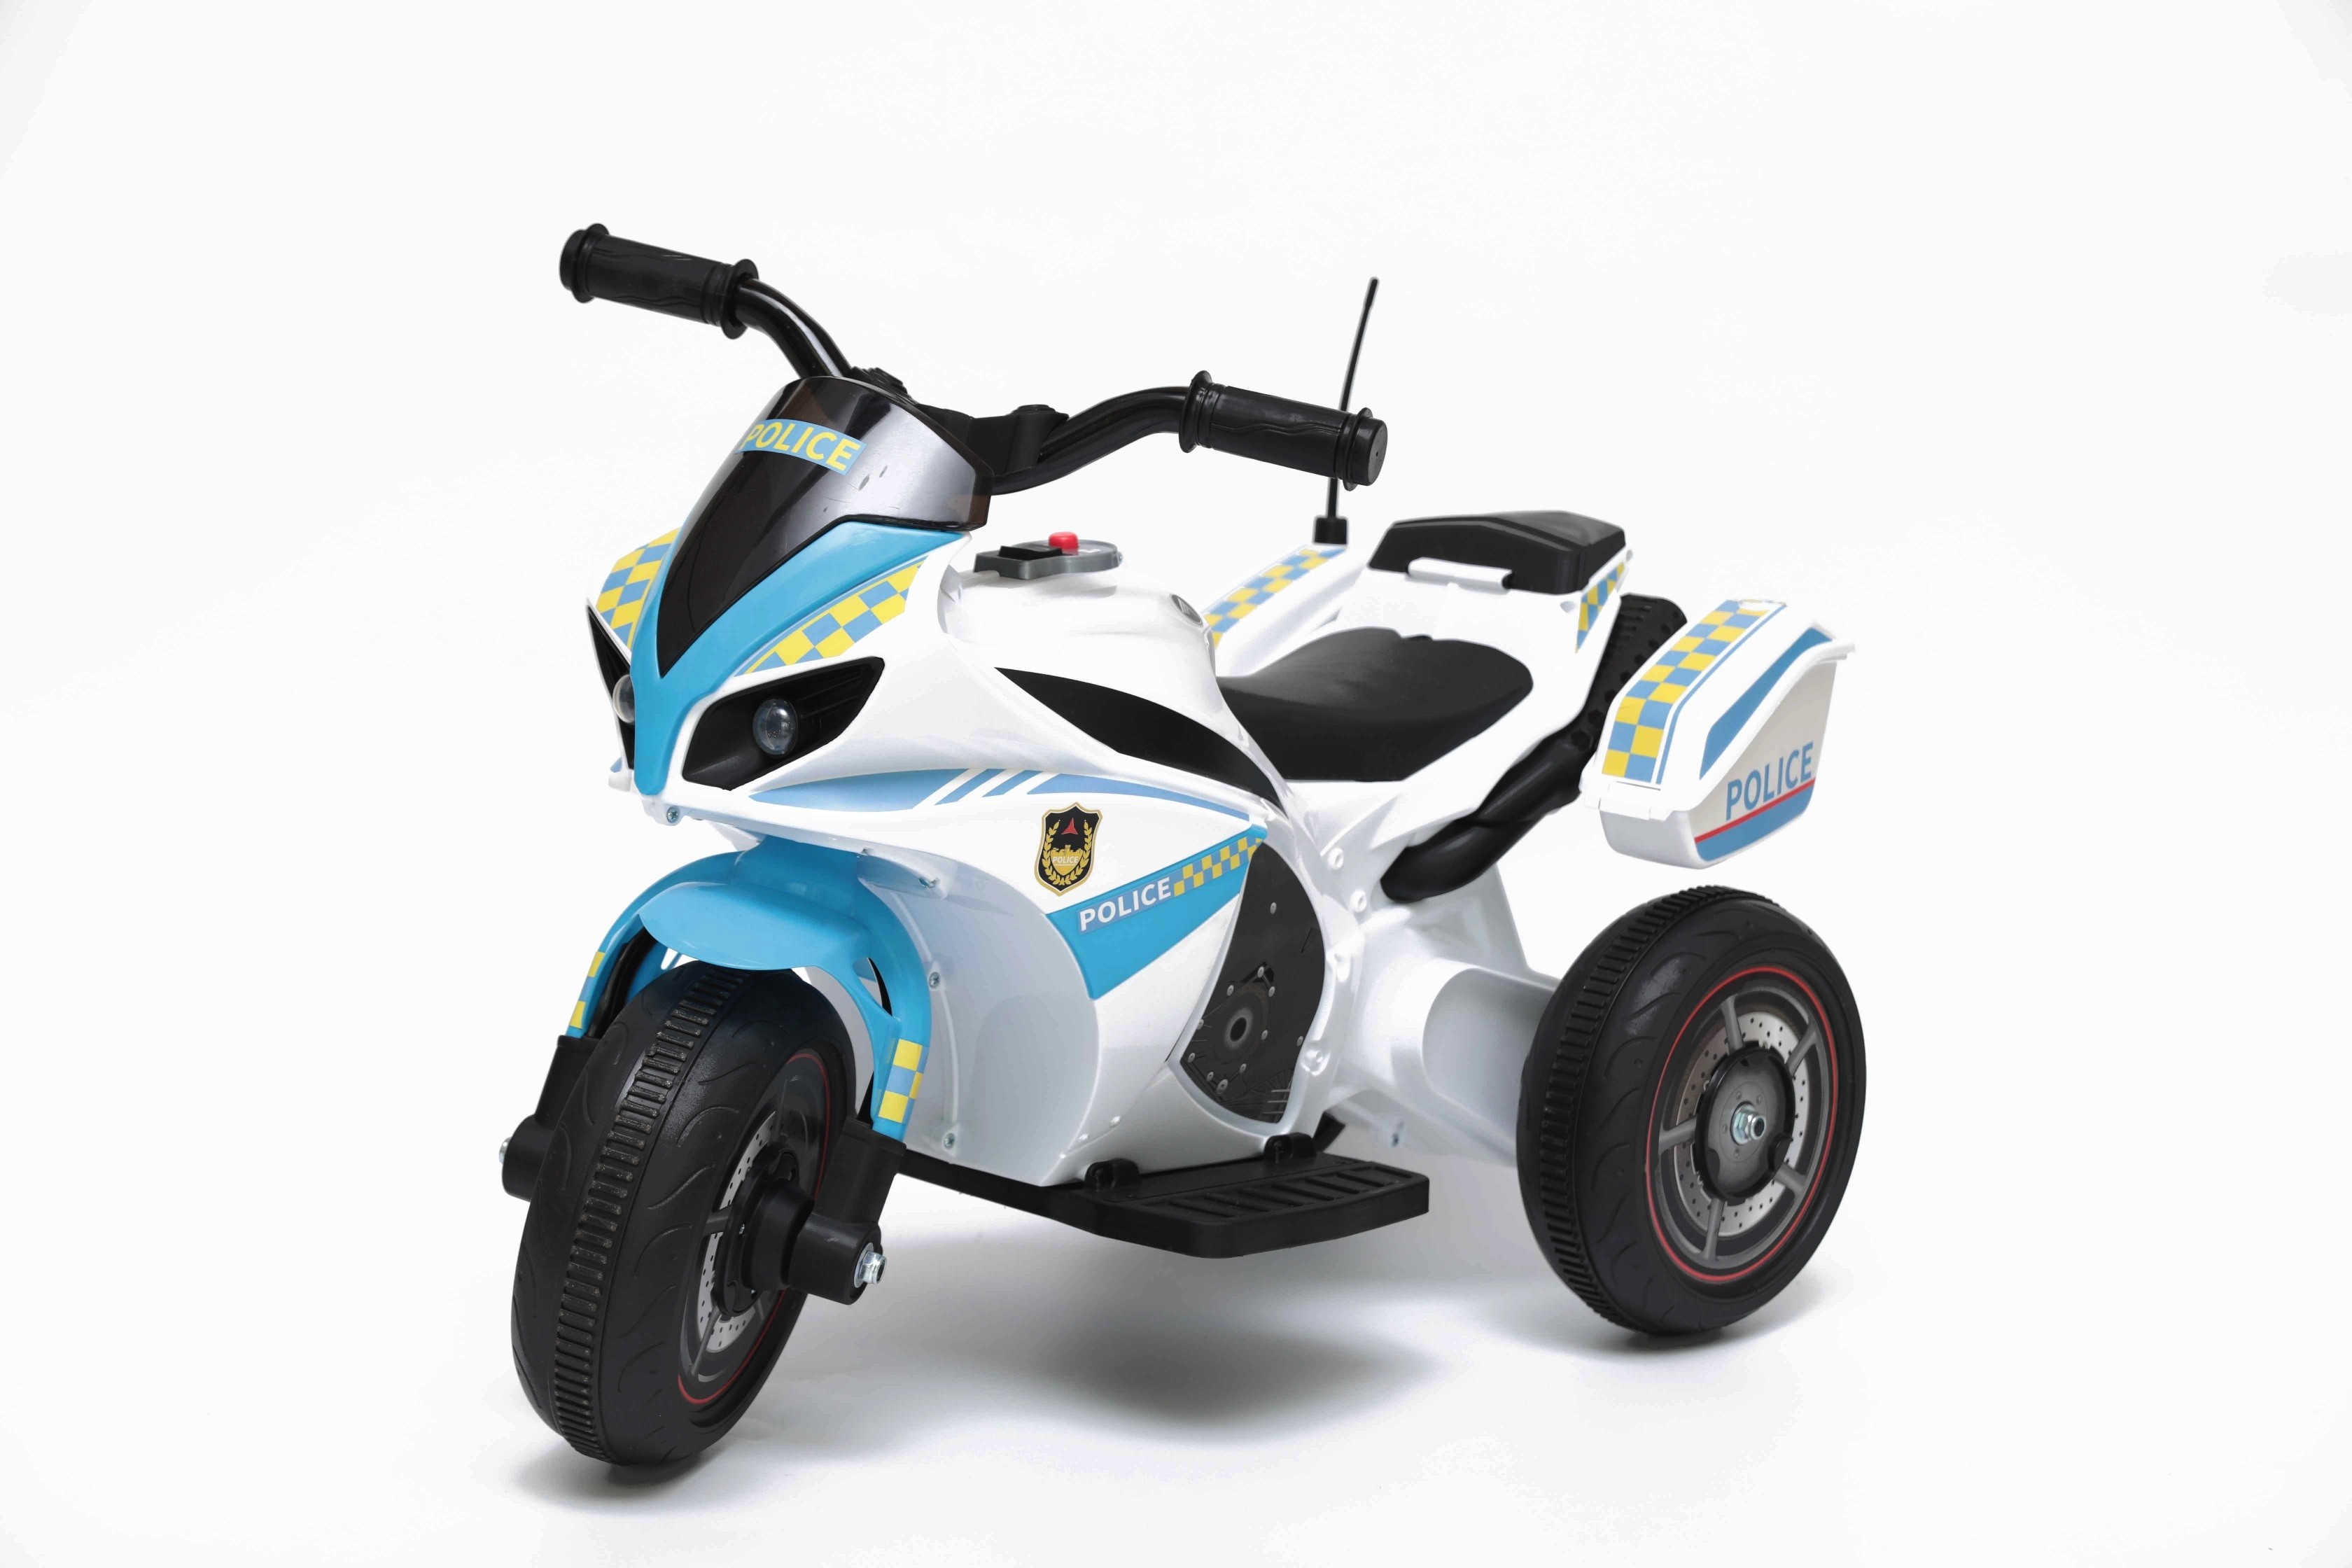 Bianco BAKAJI Toys Moto Polizia Motocicletta Elettrica Bambini Batteria 6V Ricaricabile Triciclo 3 Ruote Fari Funzionanti Sirena con Luci e Suoni Dimensione 69 x 45 x 39 cm